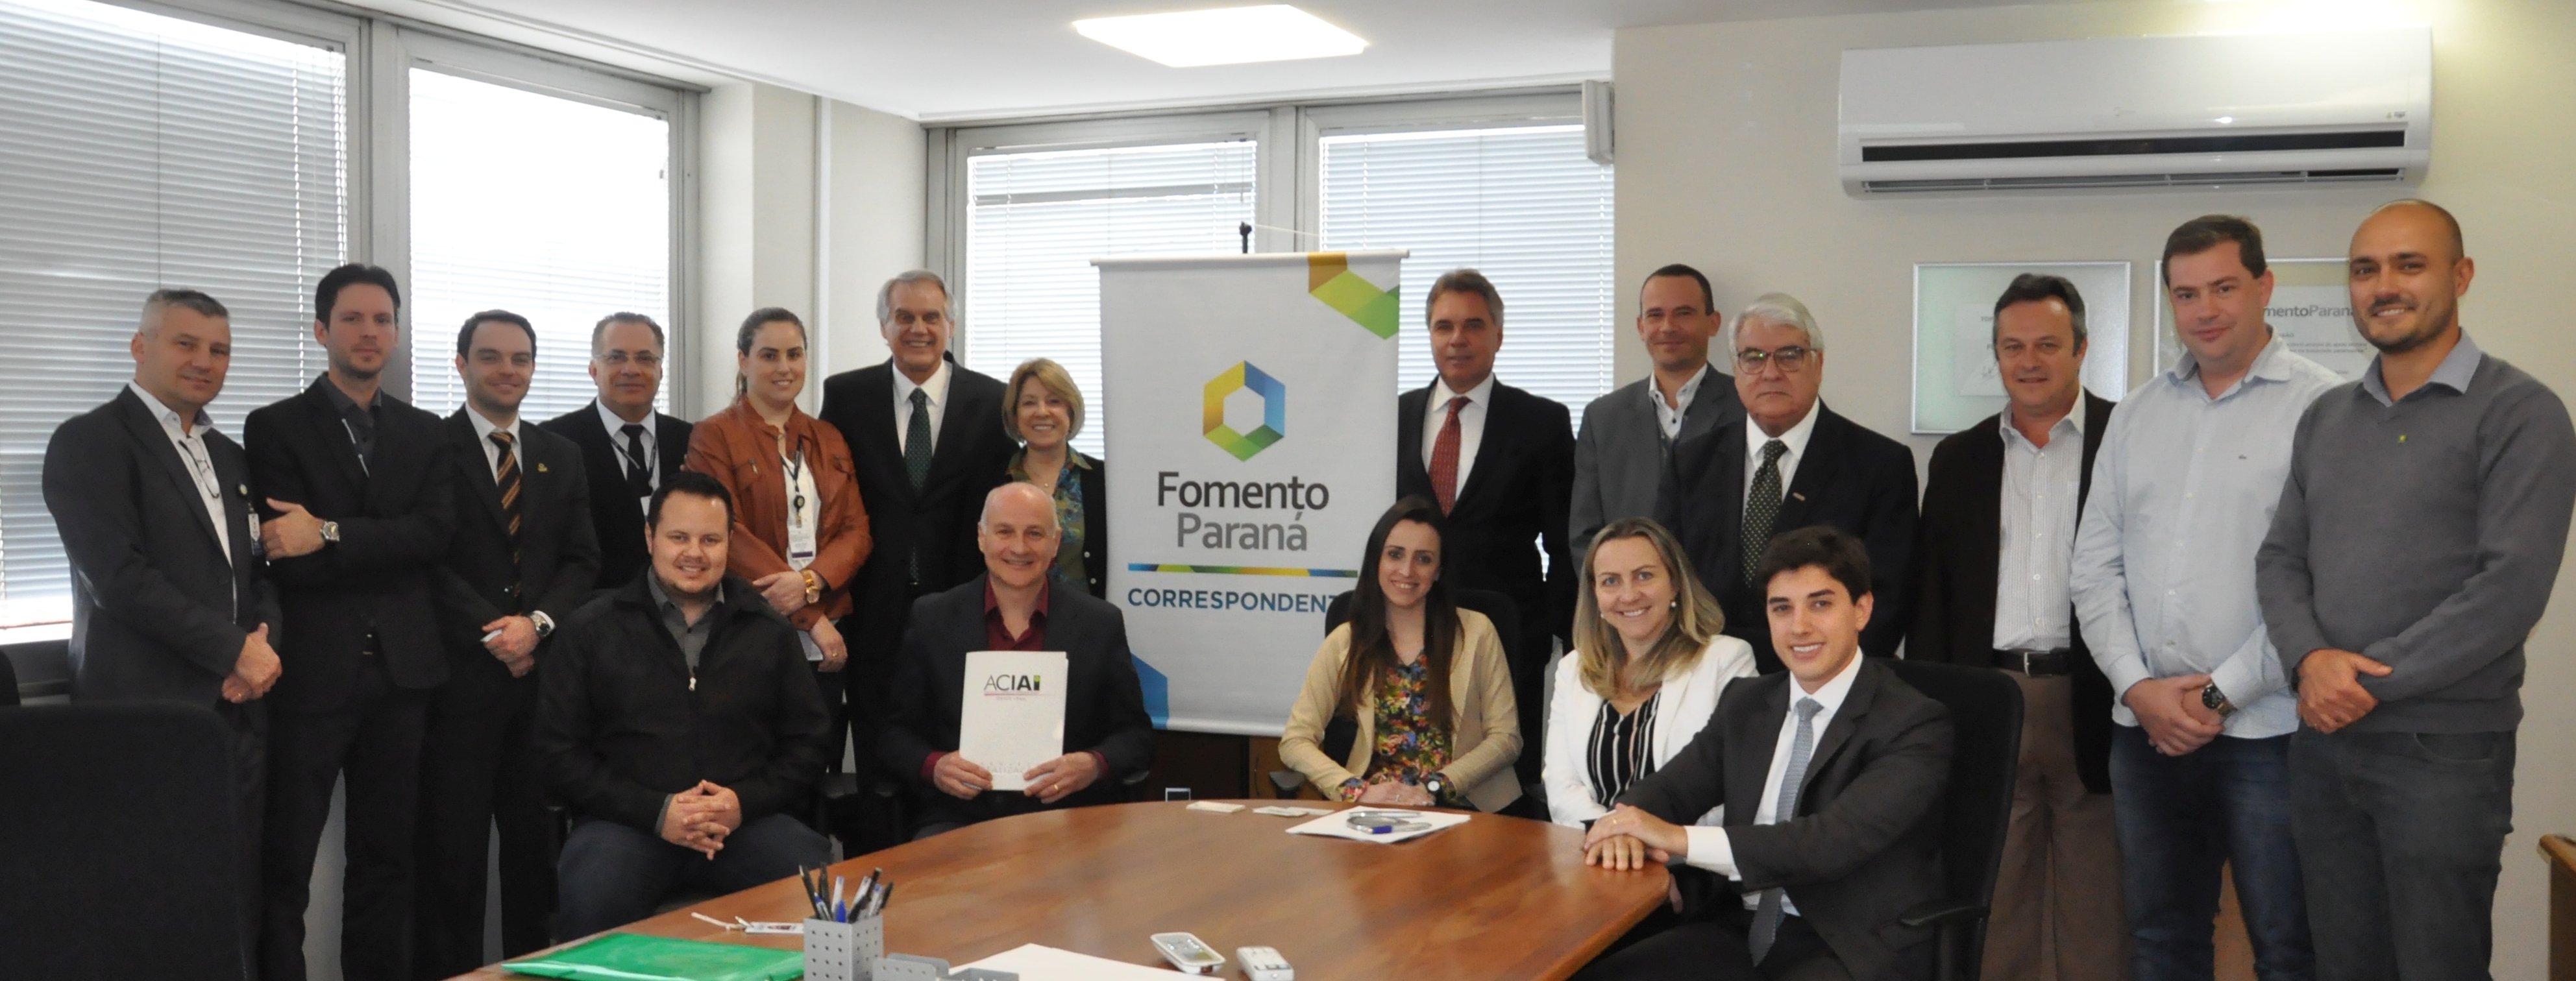 Fomento Paraná dá início a operações com Correspondentes em associações comerciais.